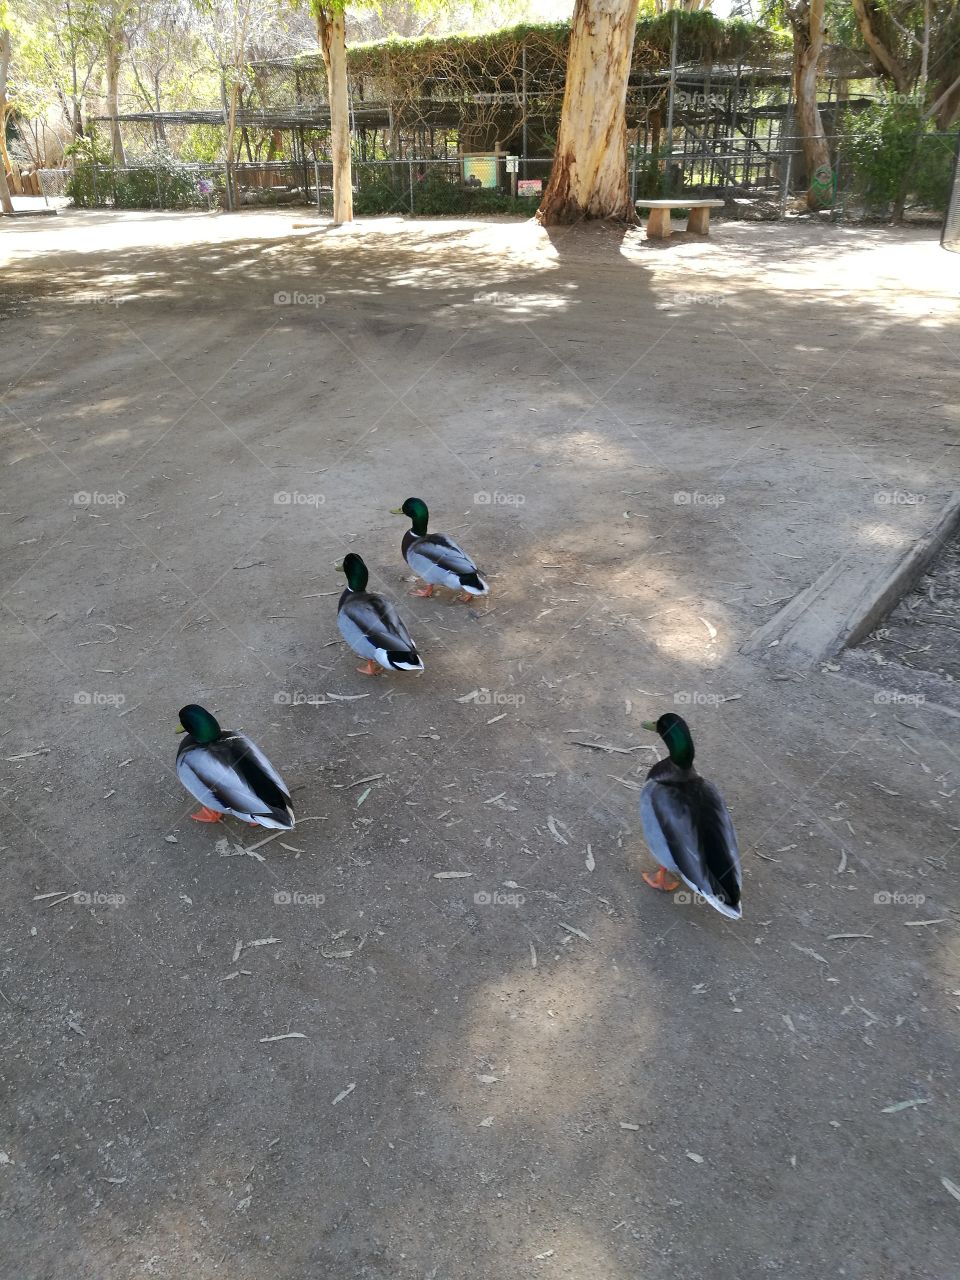 Four cute ducks walking in the zoo.